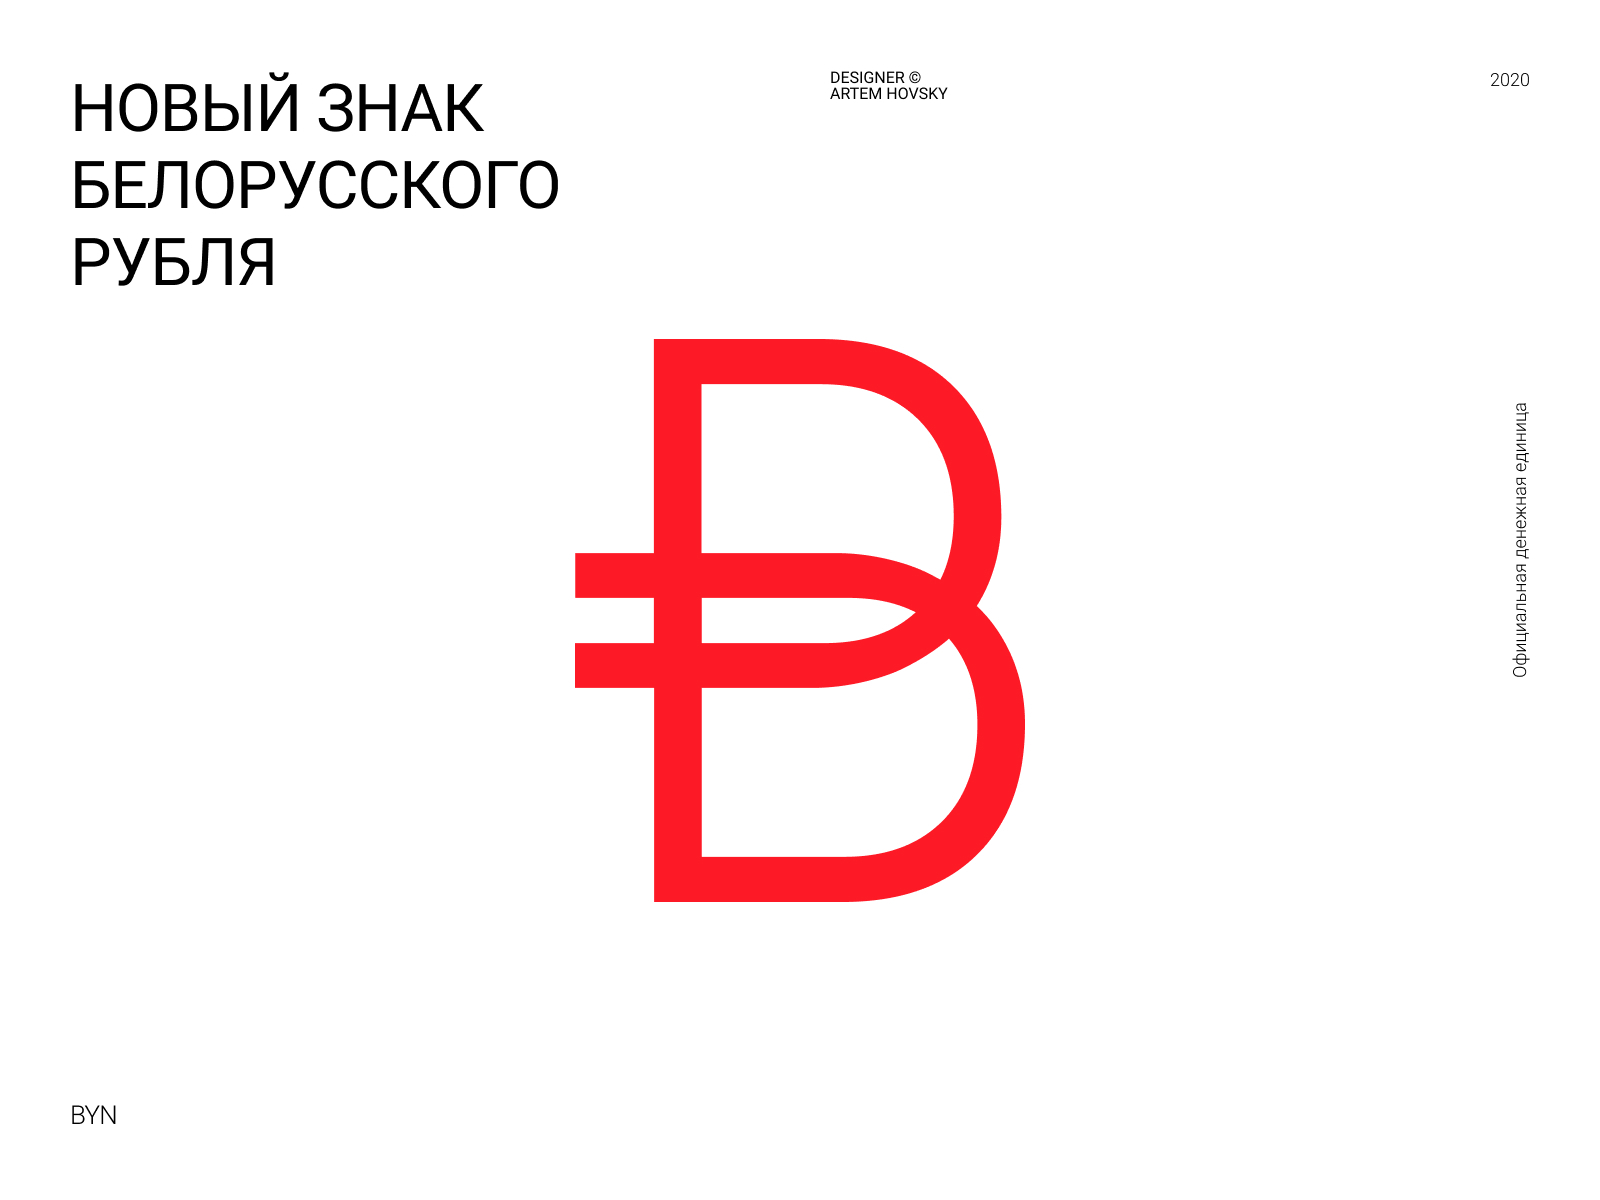 1 бел рубль в рублях. Обозначение белорусского рубля символ. Белорусский рубль значок валюты. Значок белорусского рубля символ. Белорусский рубль обоз.